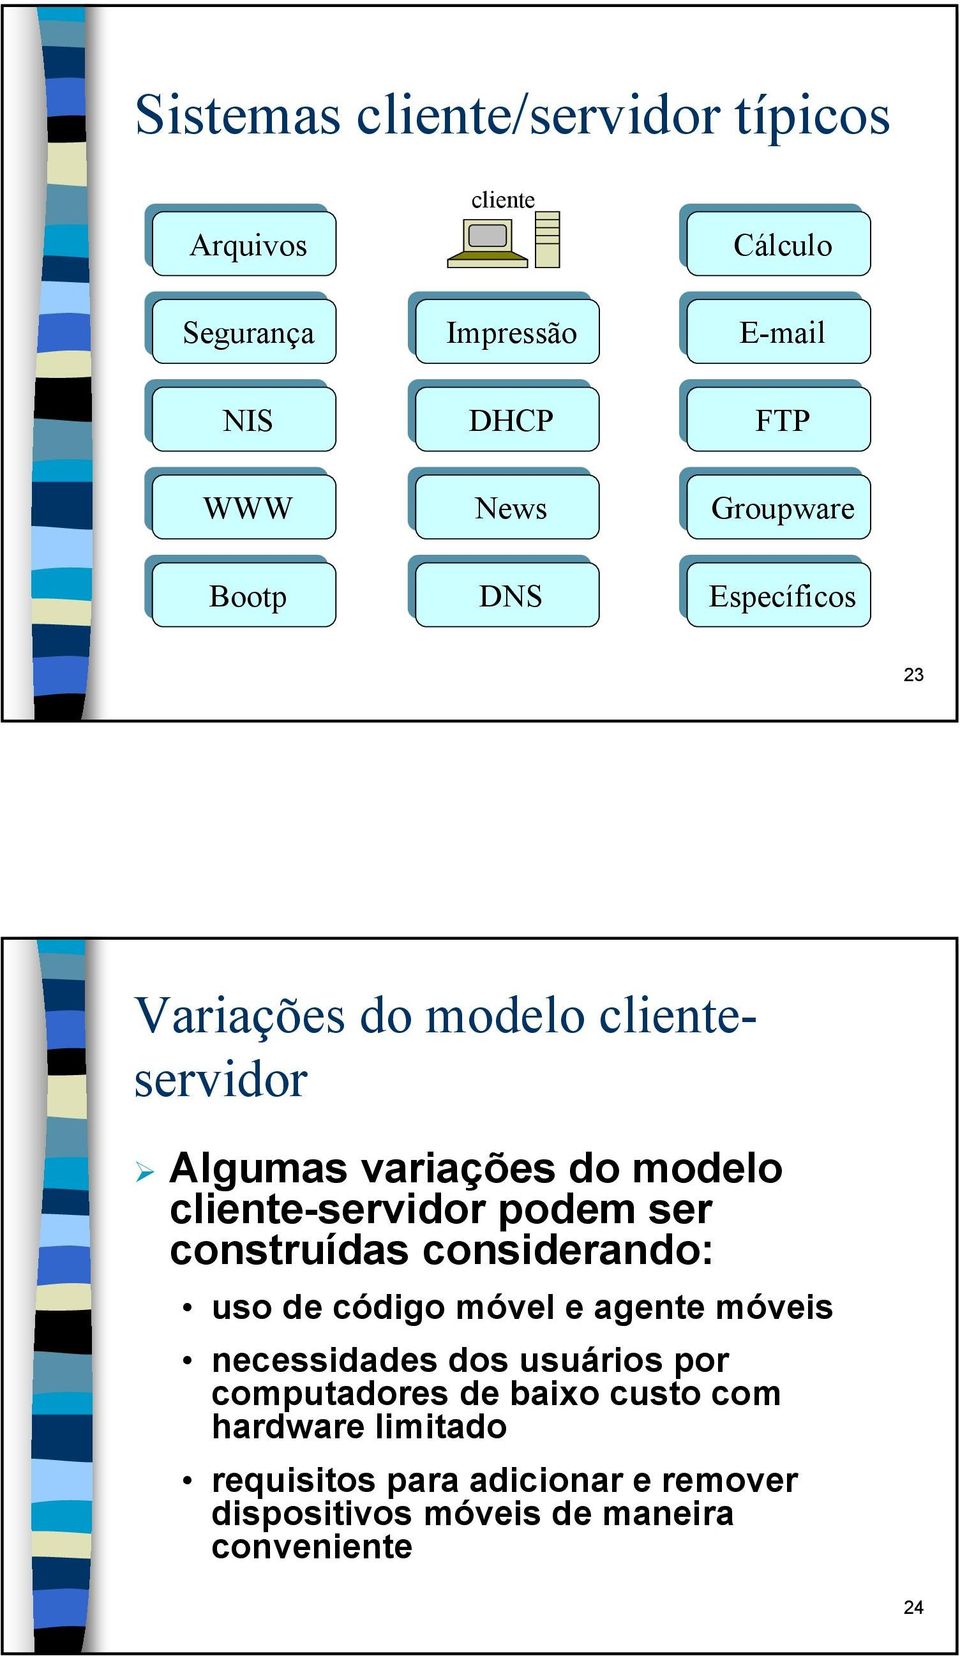 cliente-servidor podem ser construídas considerando: uso de código móvel e agente móveis necessidades dos usuários